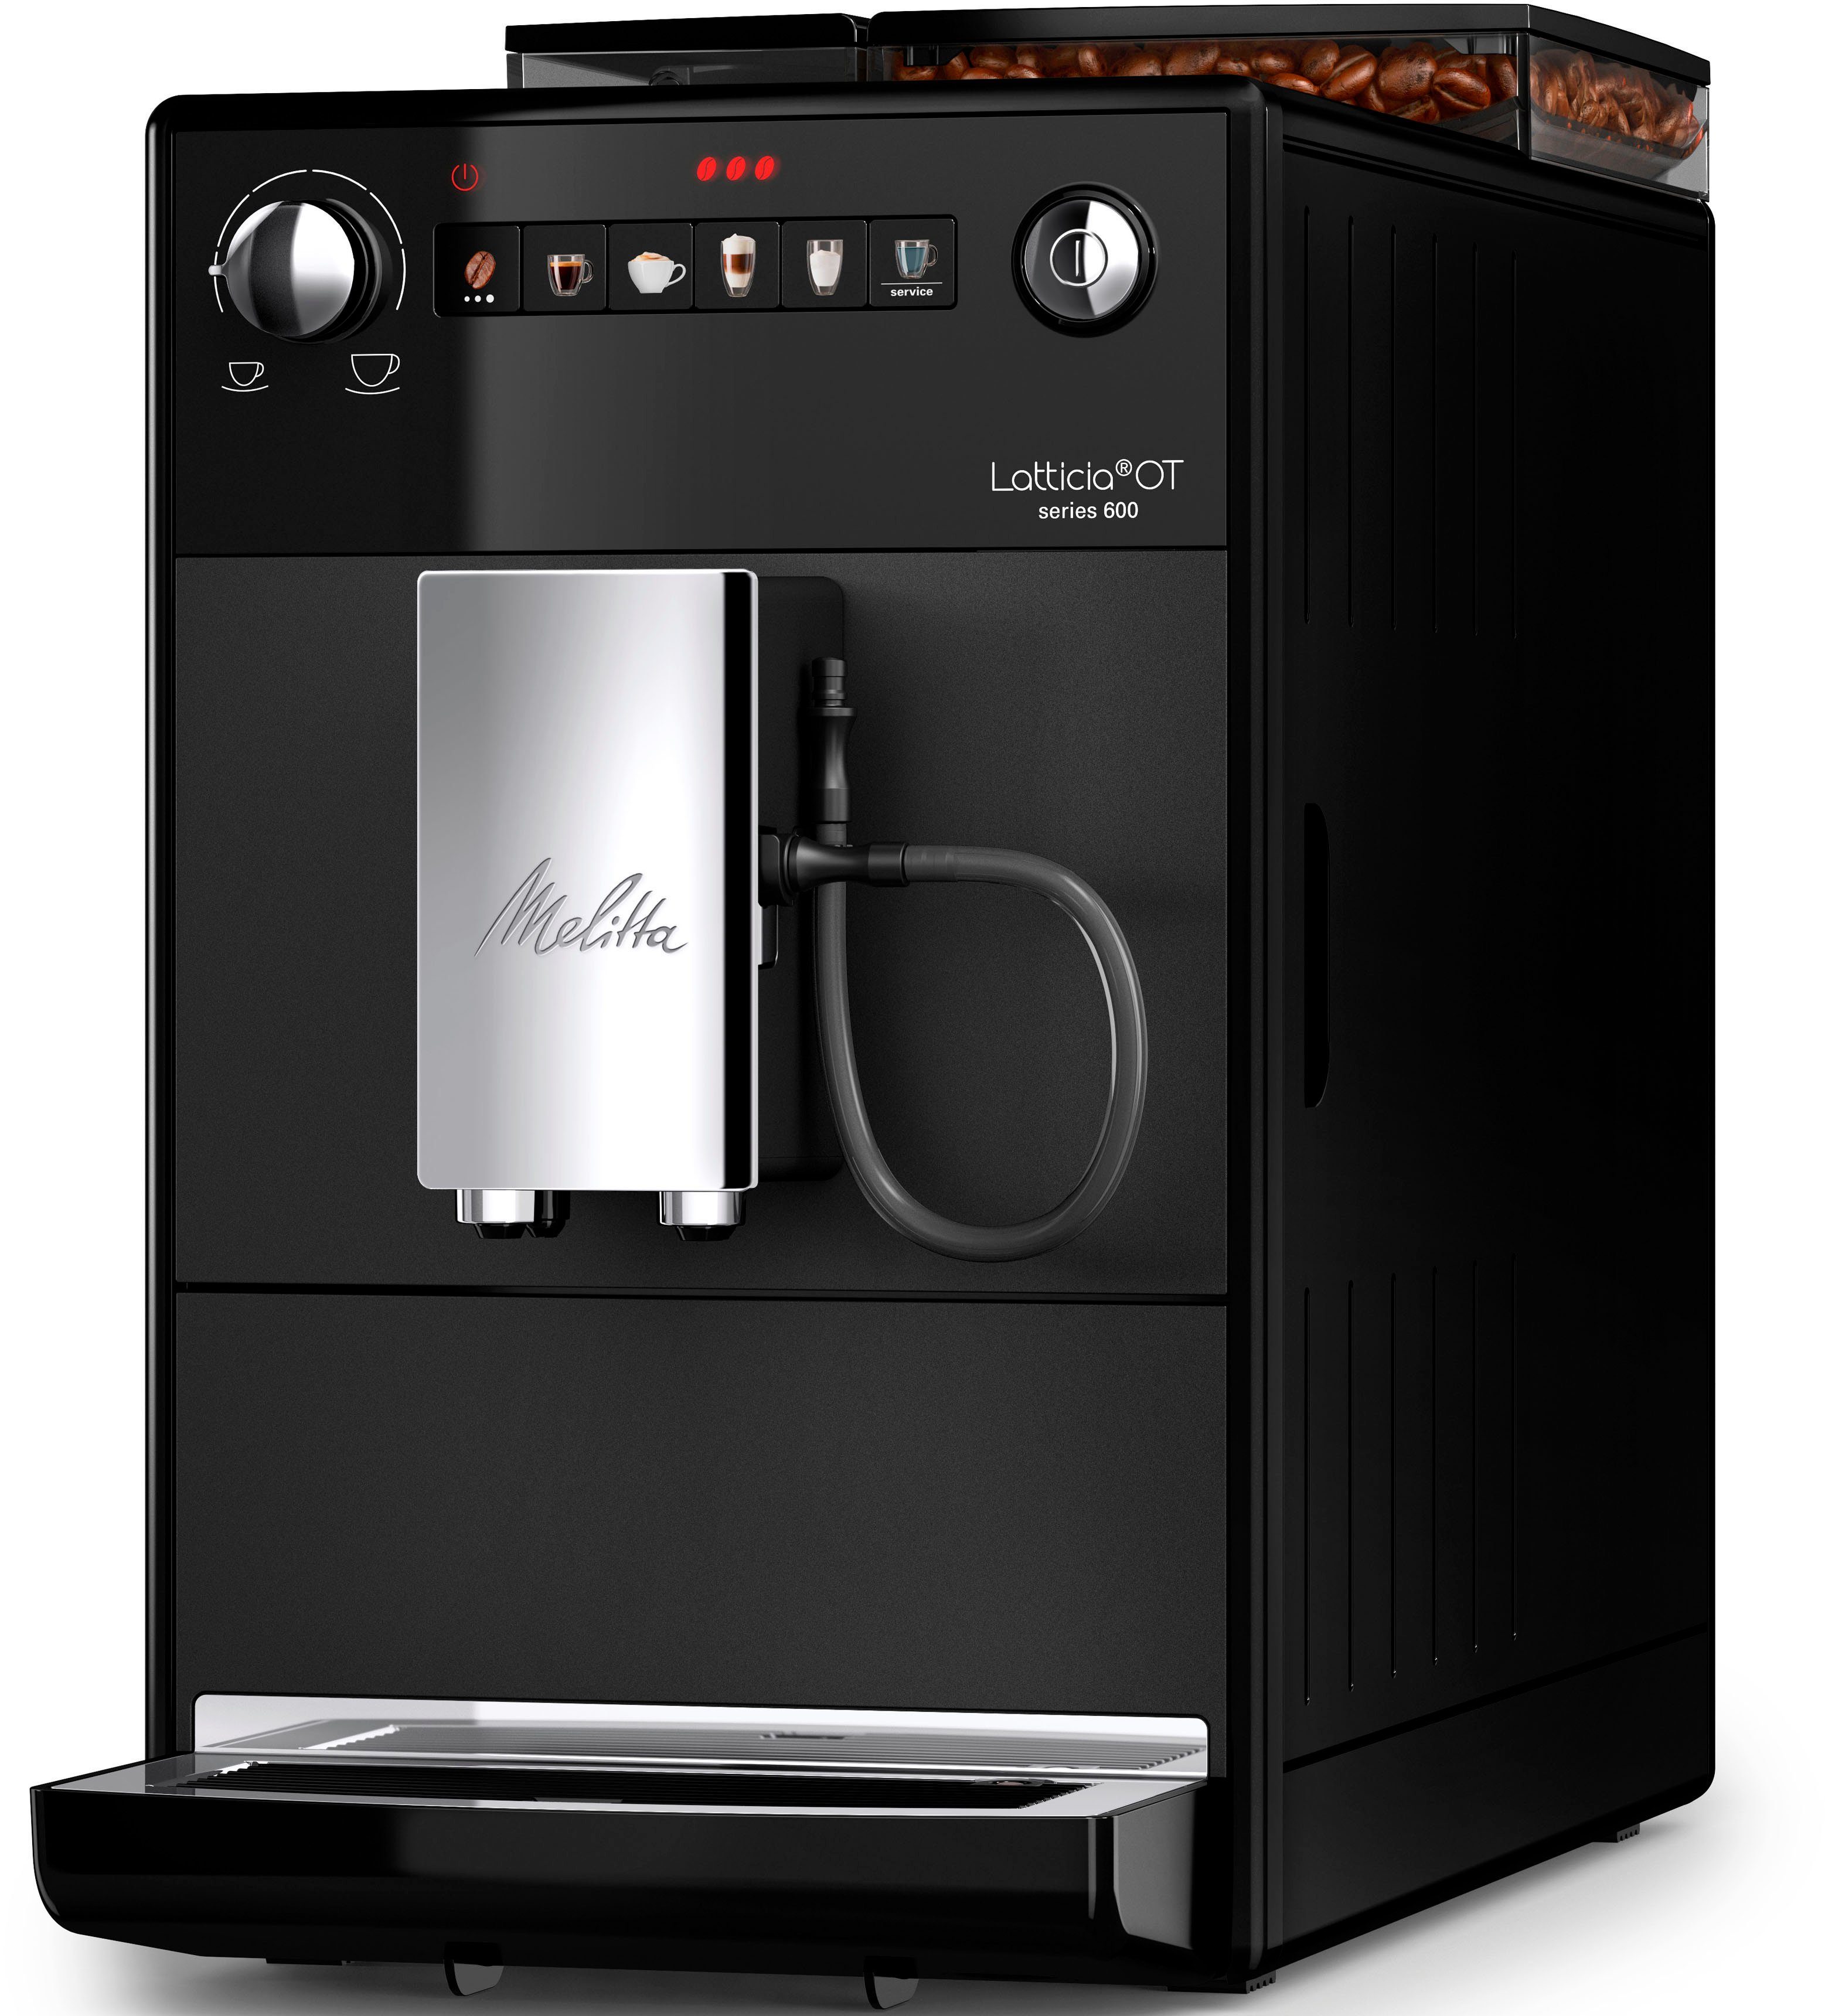 Melitta Kaffeevollautomat Latticia® Bohnenbehälter F300-100, XL Touch One Wassertank & schwarz, aber XL kompakt